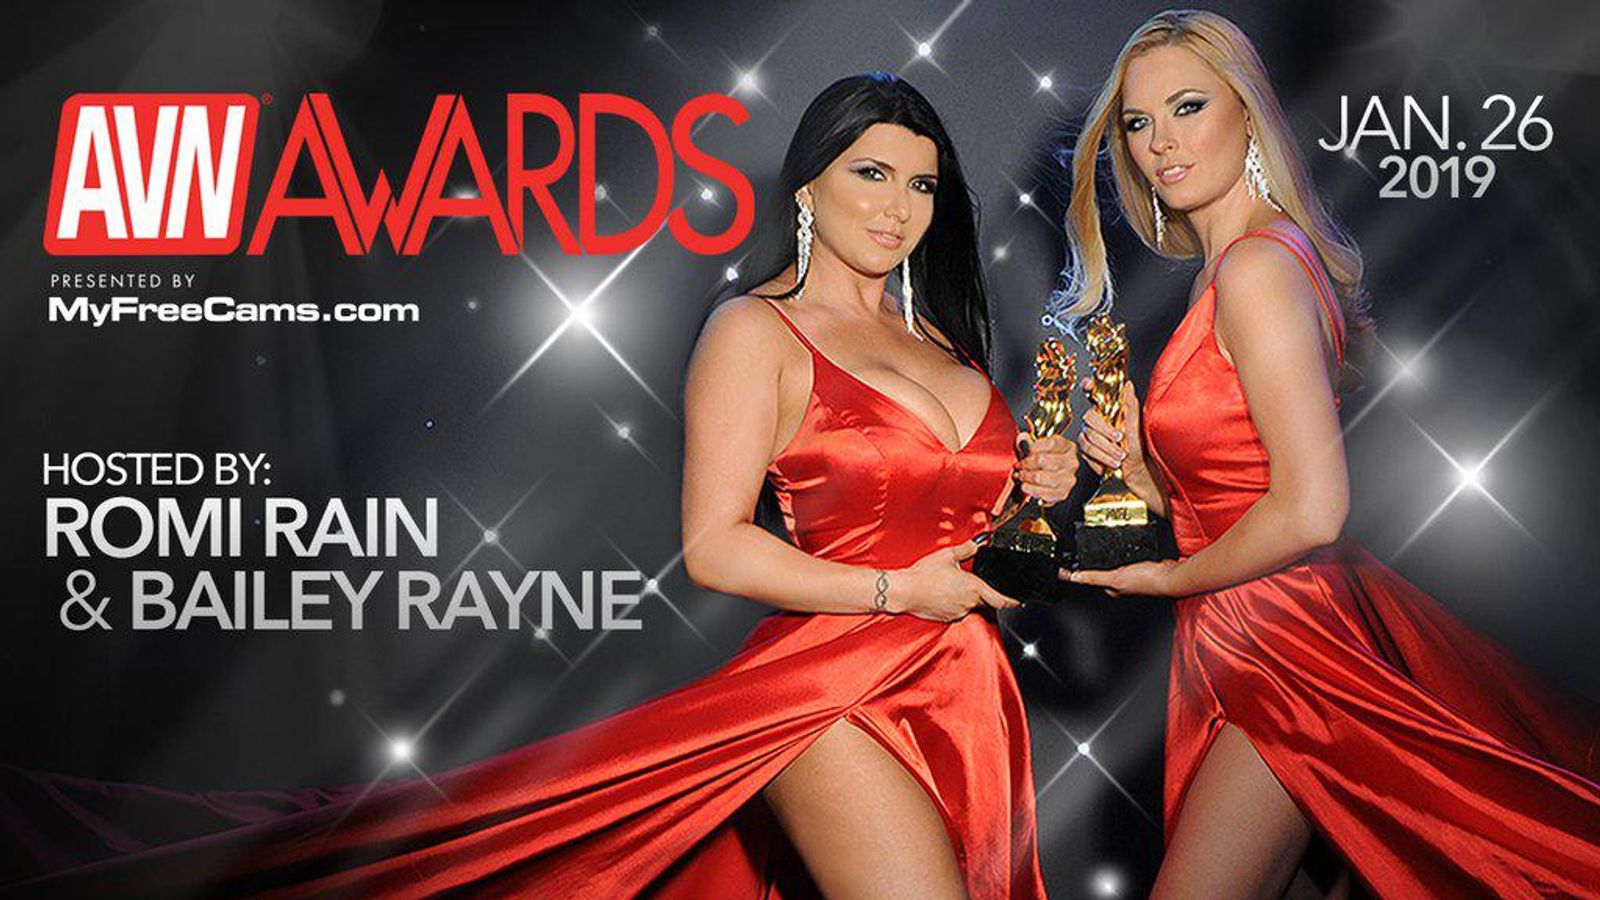 Avn Top Female Porn Star - 2019 AVN Award Winners Announced | AVN